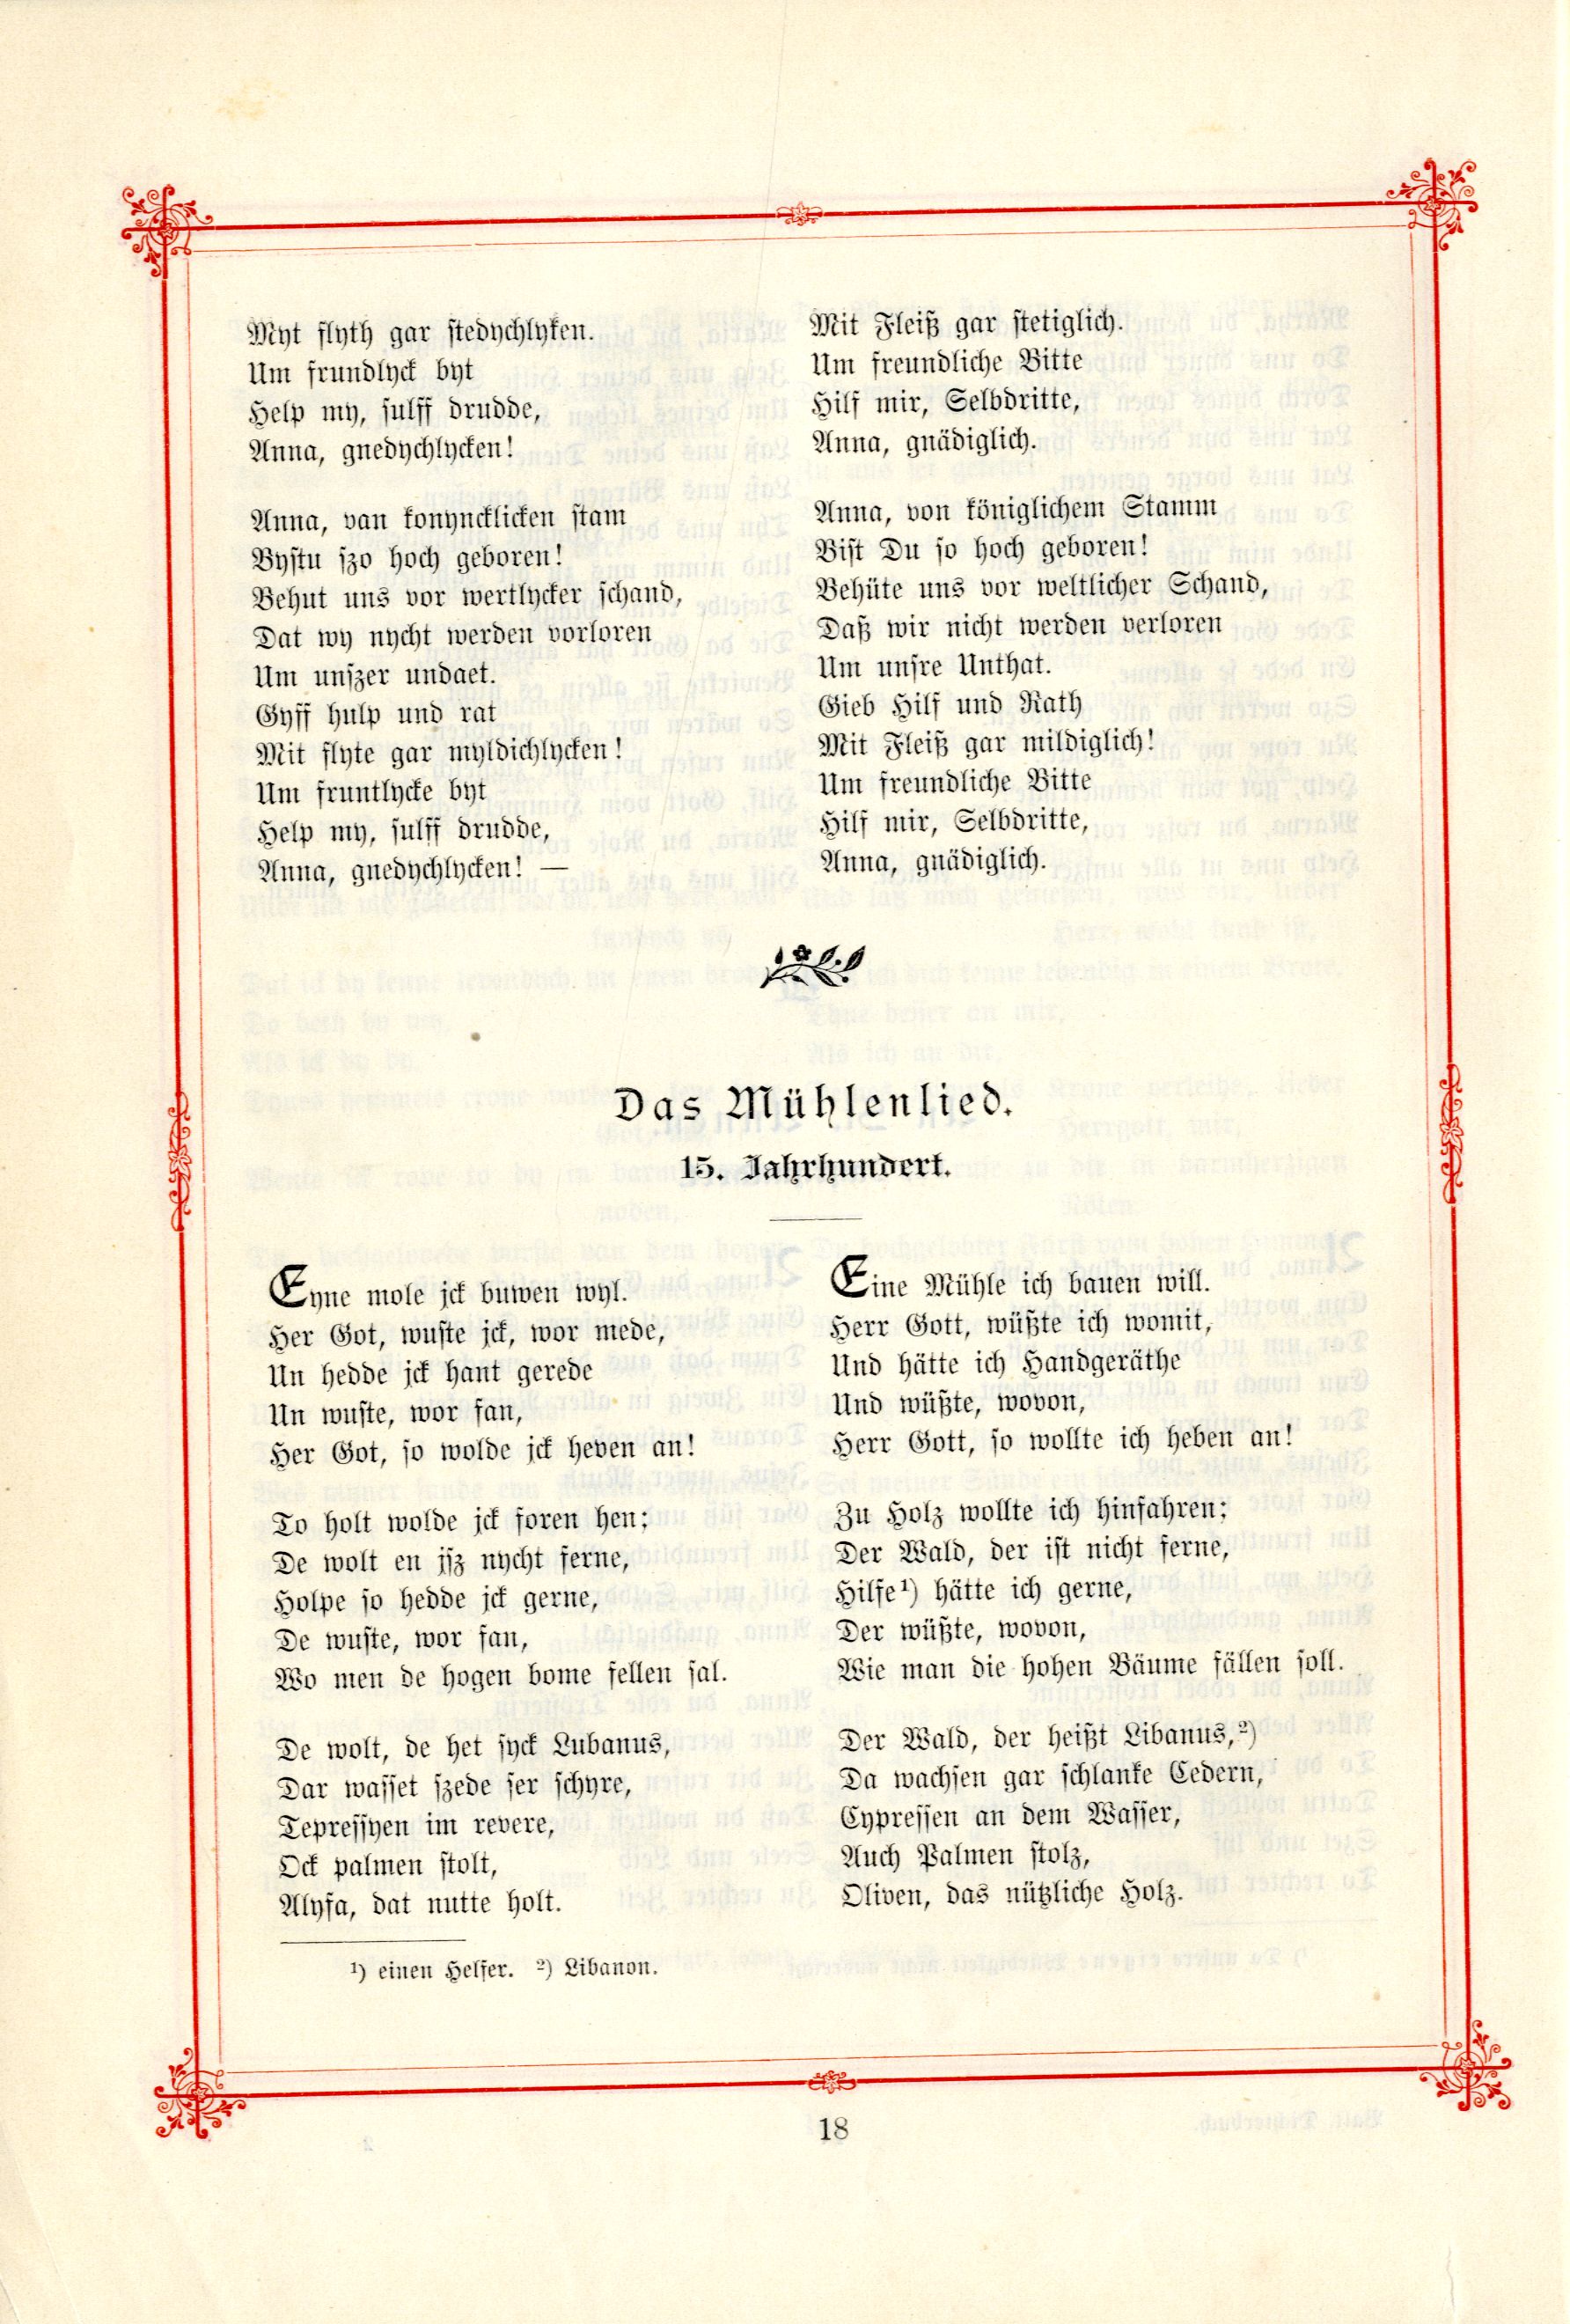 Das Baltische Dichterbuch (1895) | 64. (18) Main body of text